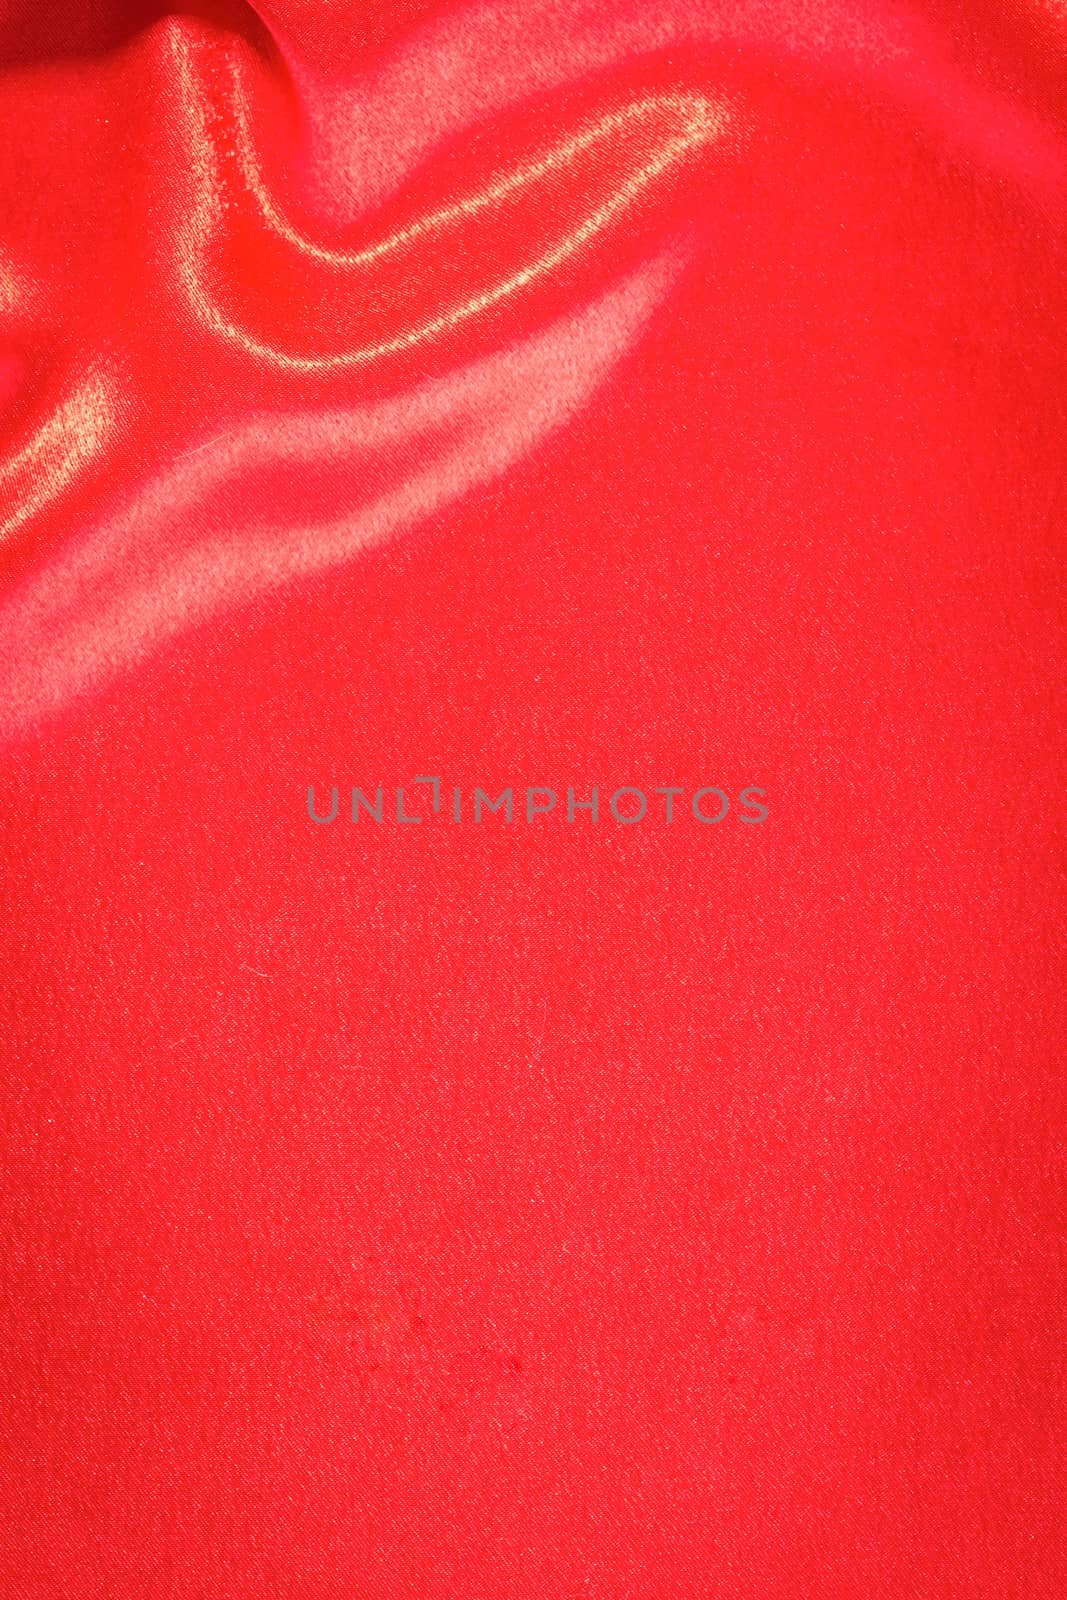 Red silk background by Valengilda